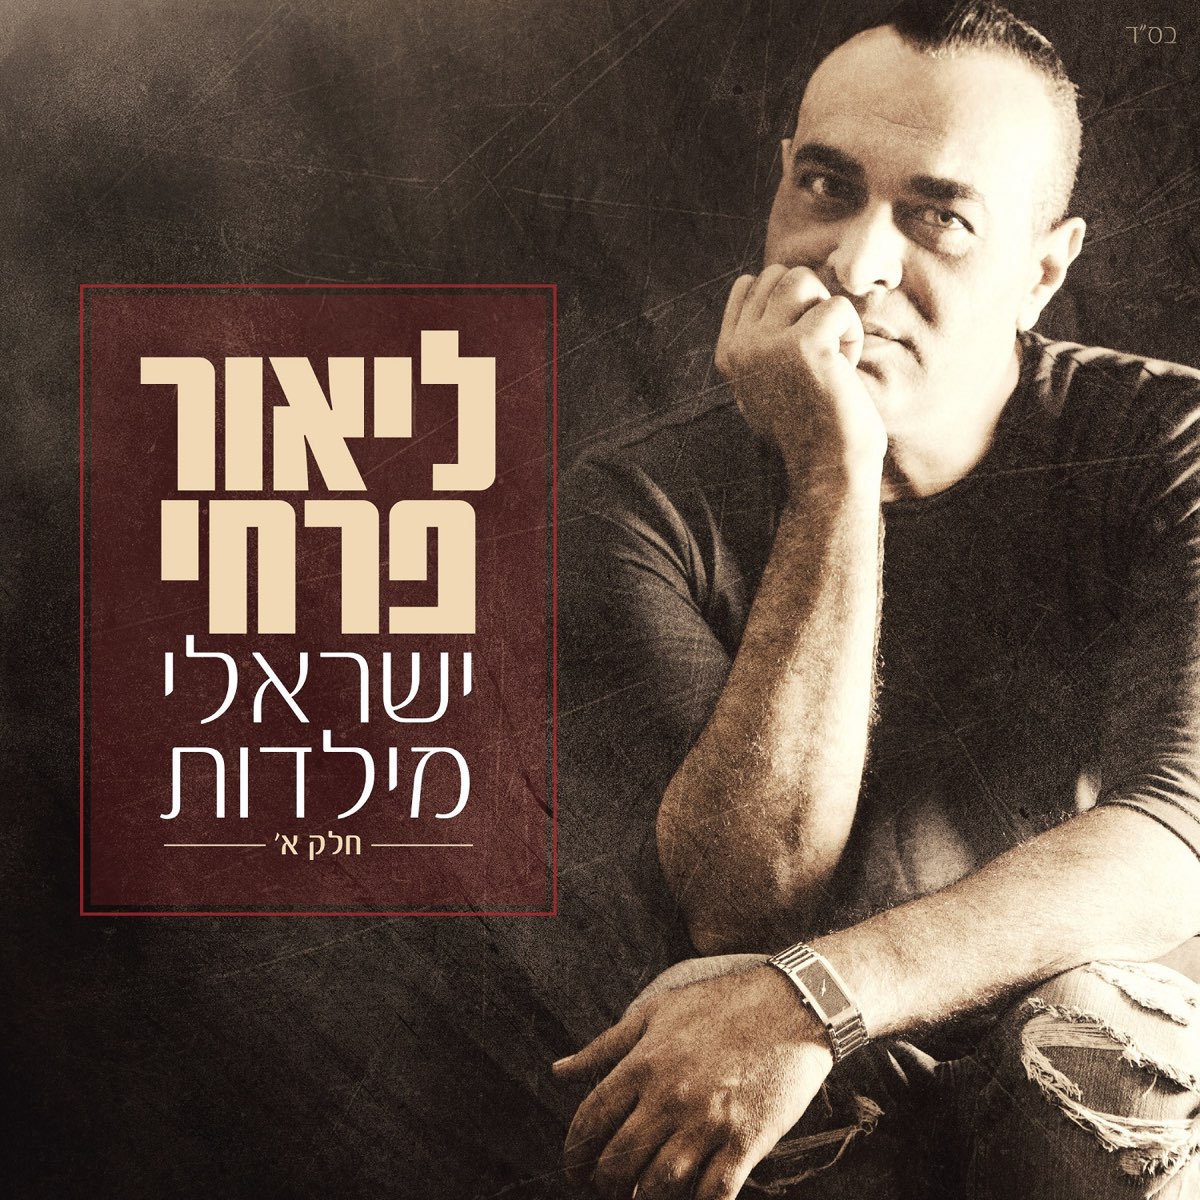 ‎ישראלי מילדות חלק א - Album by Lior Farhi - Apple Music